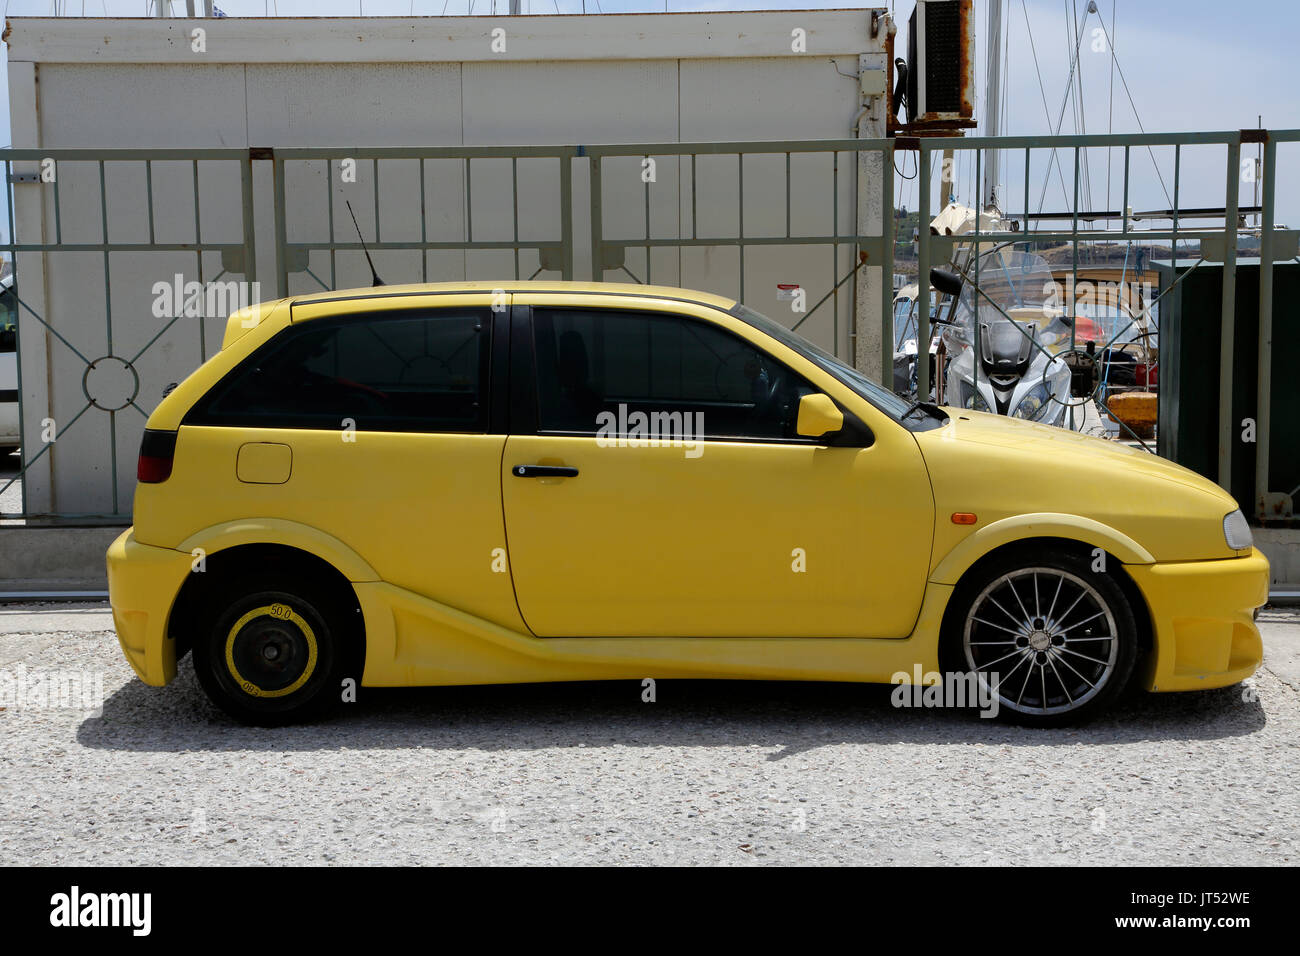 Lavrio Hafen ATTIKA Griechenland leuchtend gelben Seat Ibiza Auto nach Hafen geparkt Stockfoto